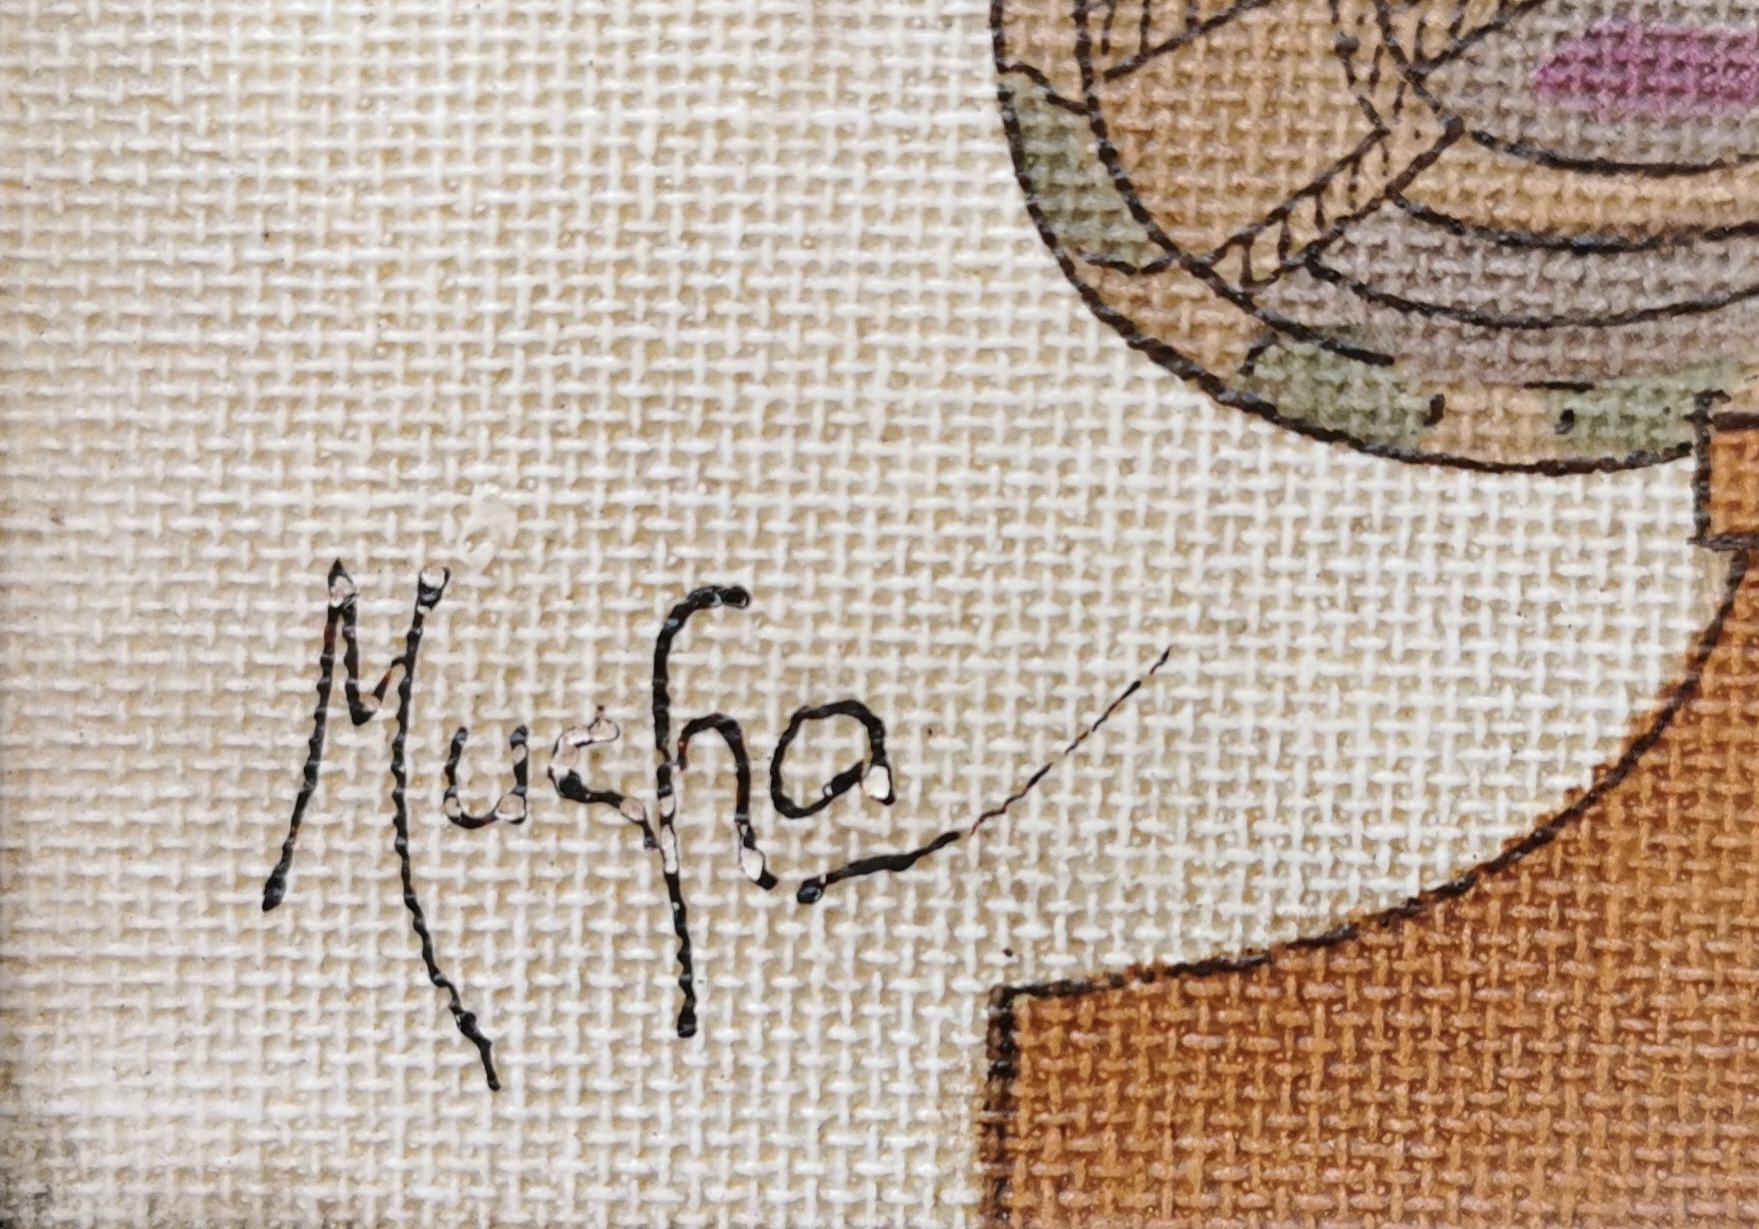 Alfons Mucha (1860 - 1939)